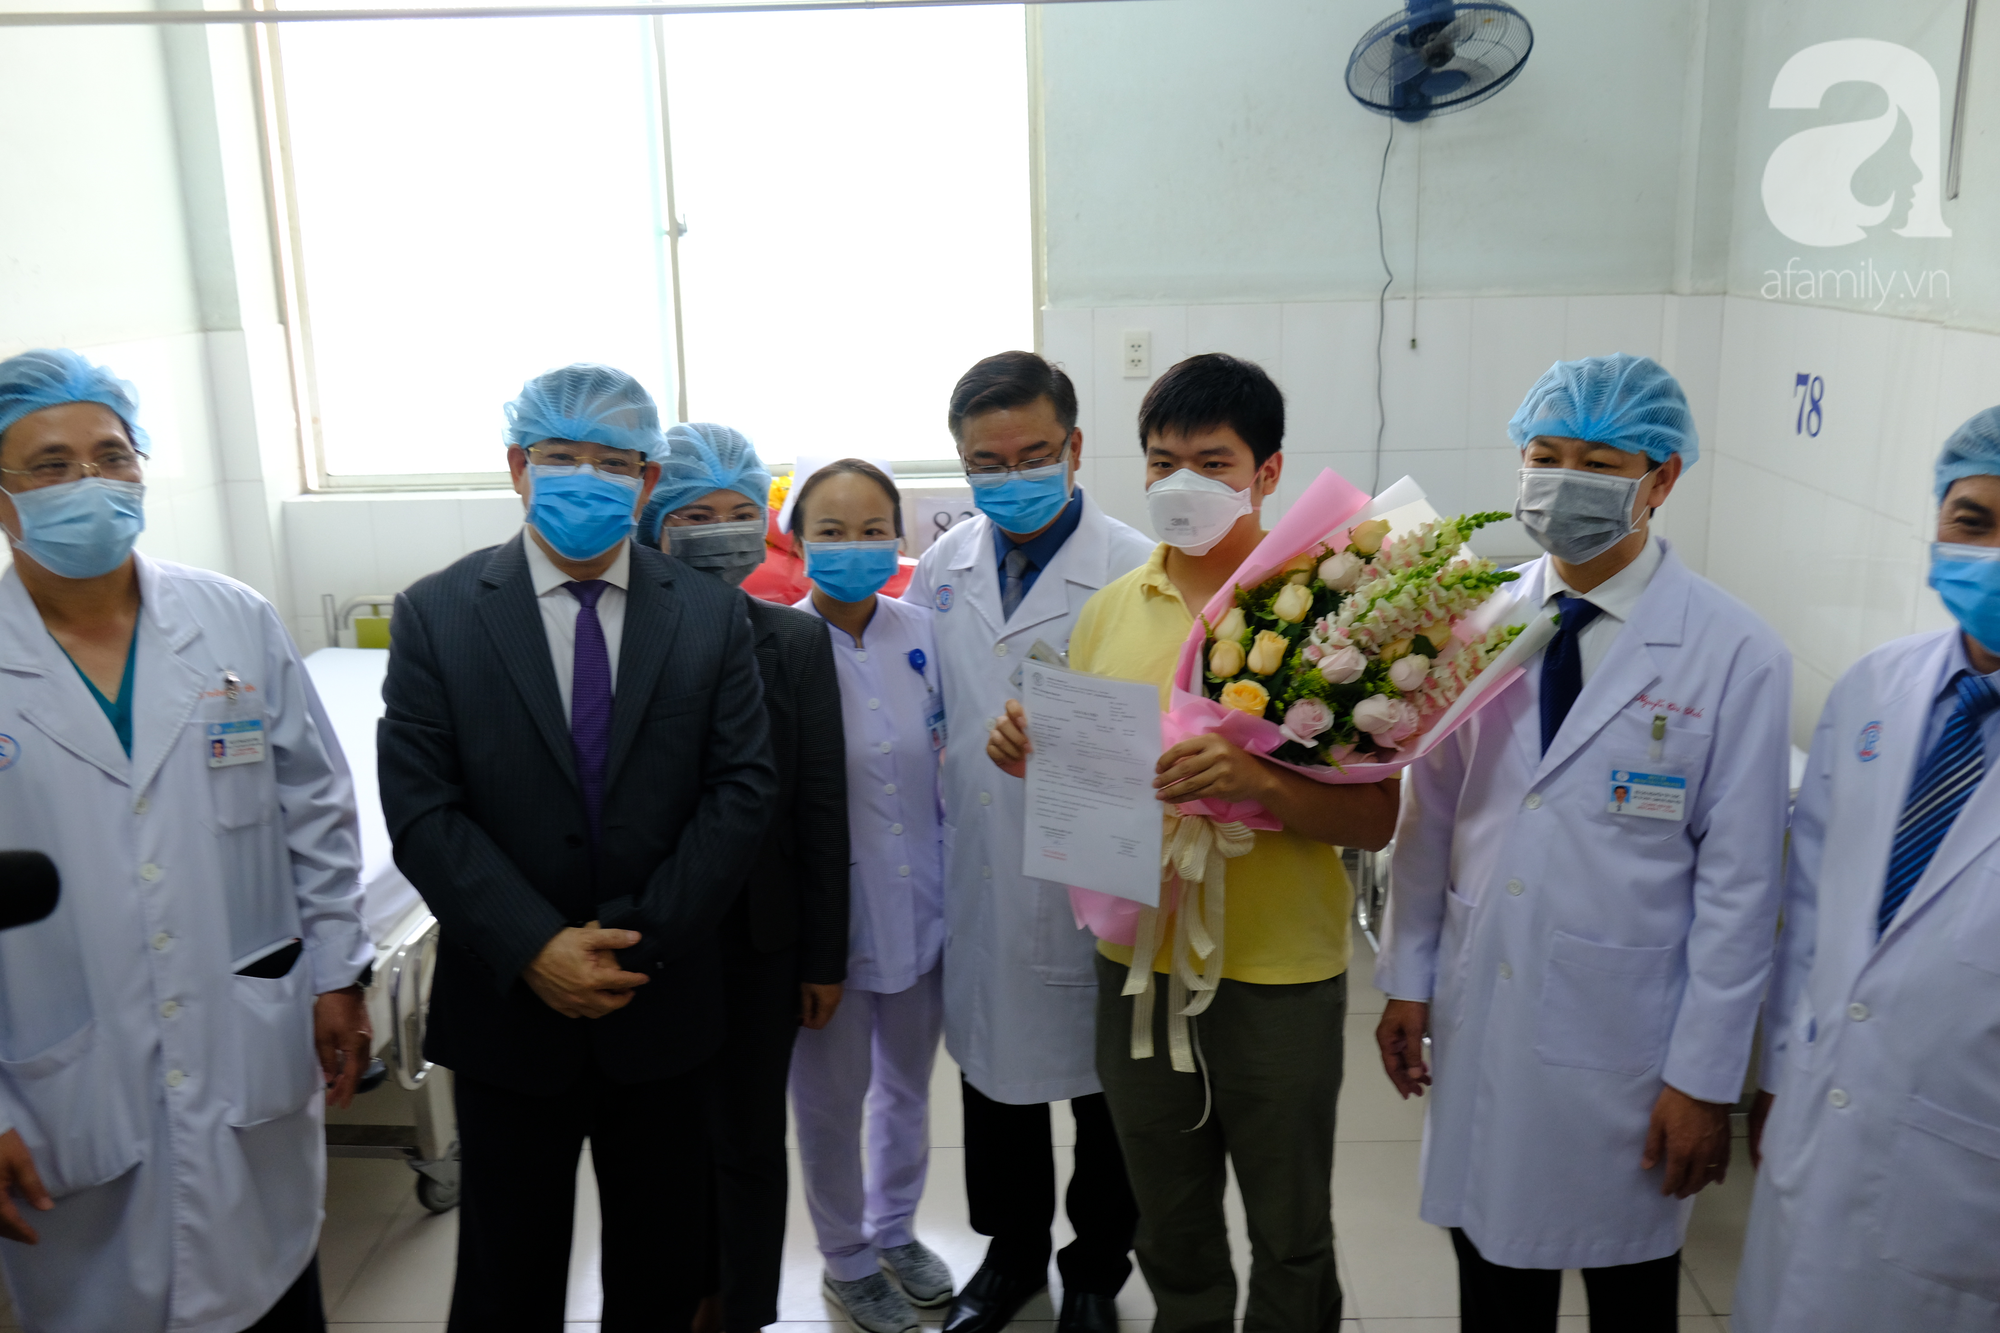 Xúc động bức thư cha con người Trung Quốc nhiễm Covid-19 được chữa khỏi bệnh gửi đến bác sĩ Bệnh viện Chợ Rẫy - Ảnh 6.